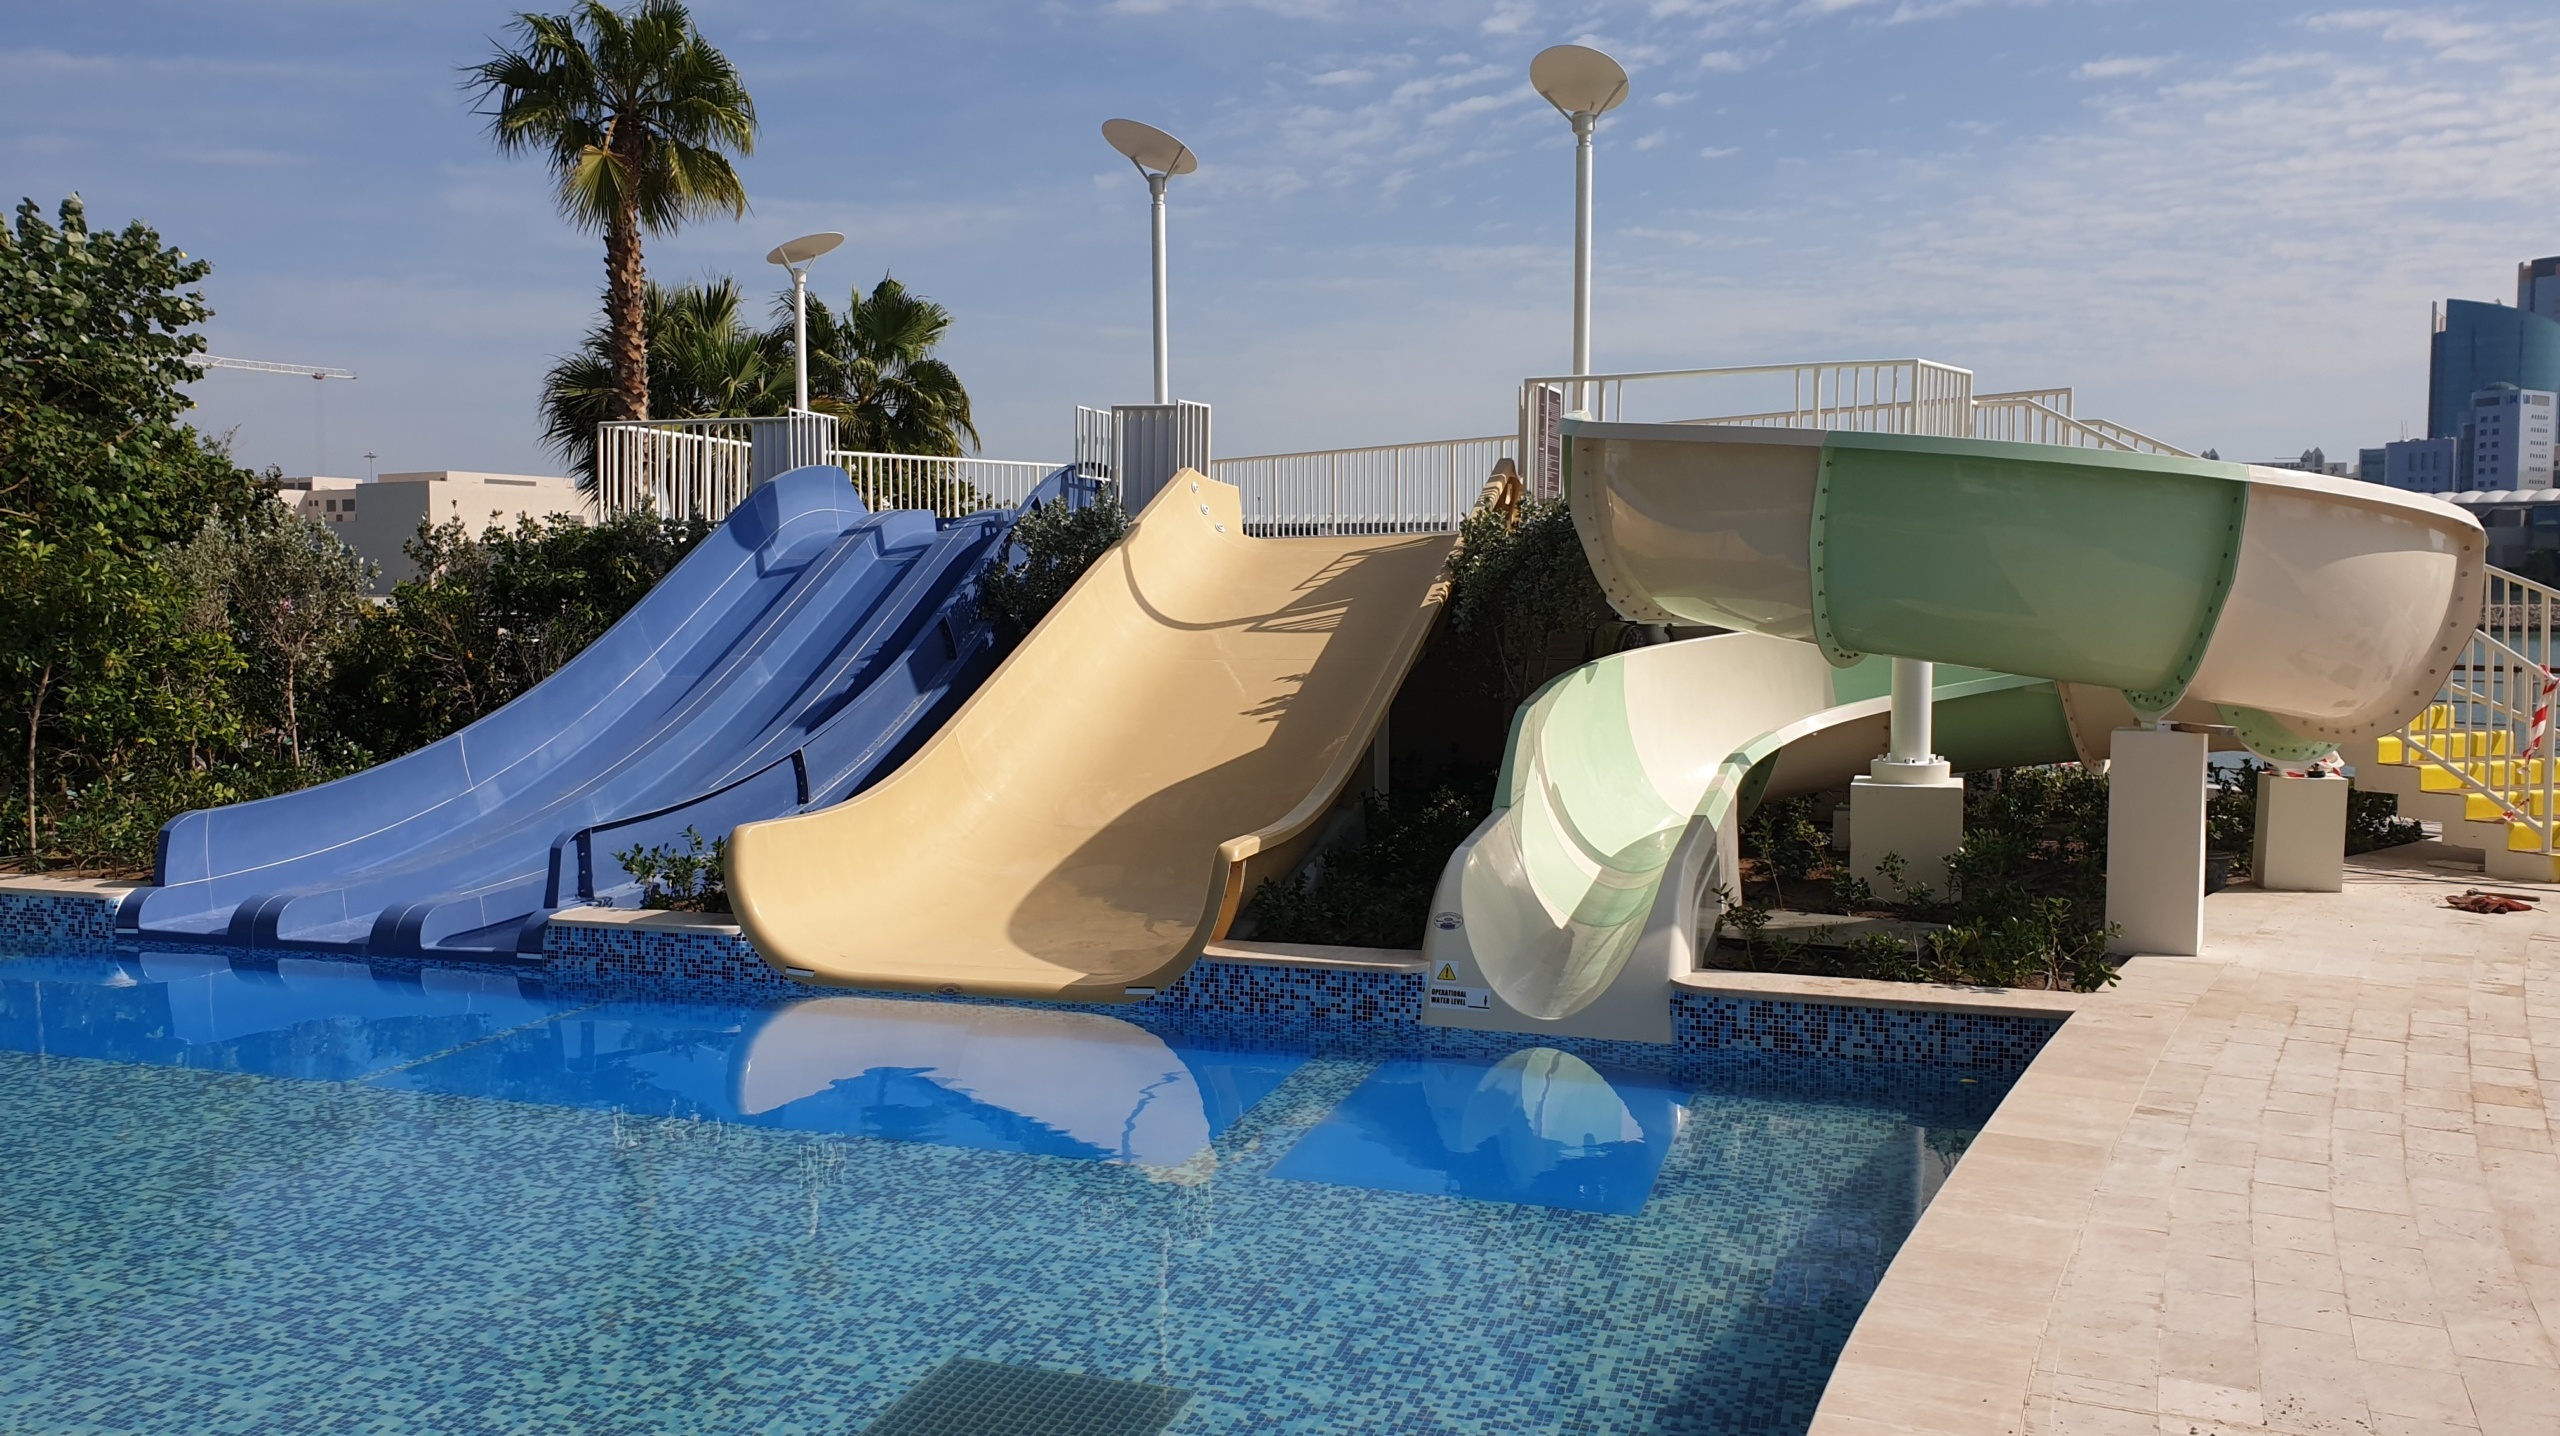 Image Kids’ Slides, Four Seasons Hotel Bahrain Bay, Bahrain Bay, Bahrain